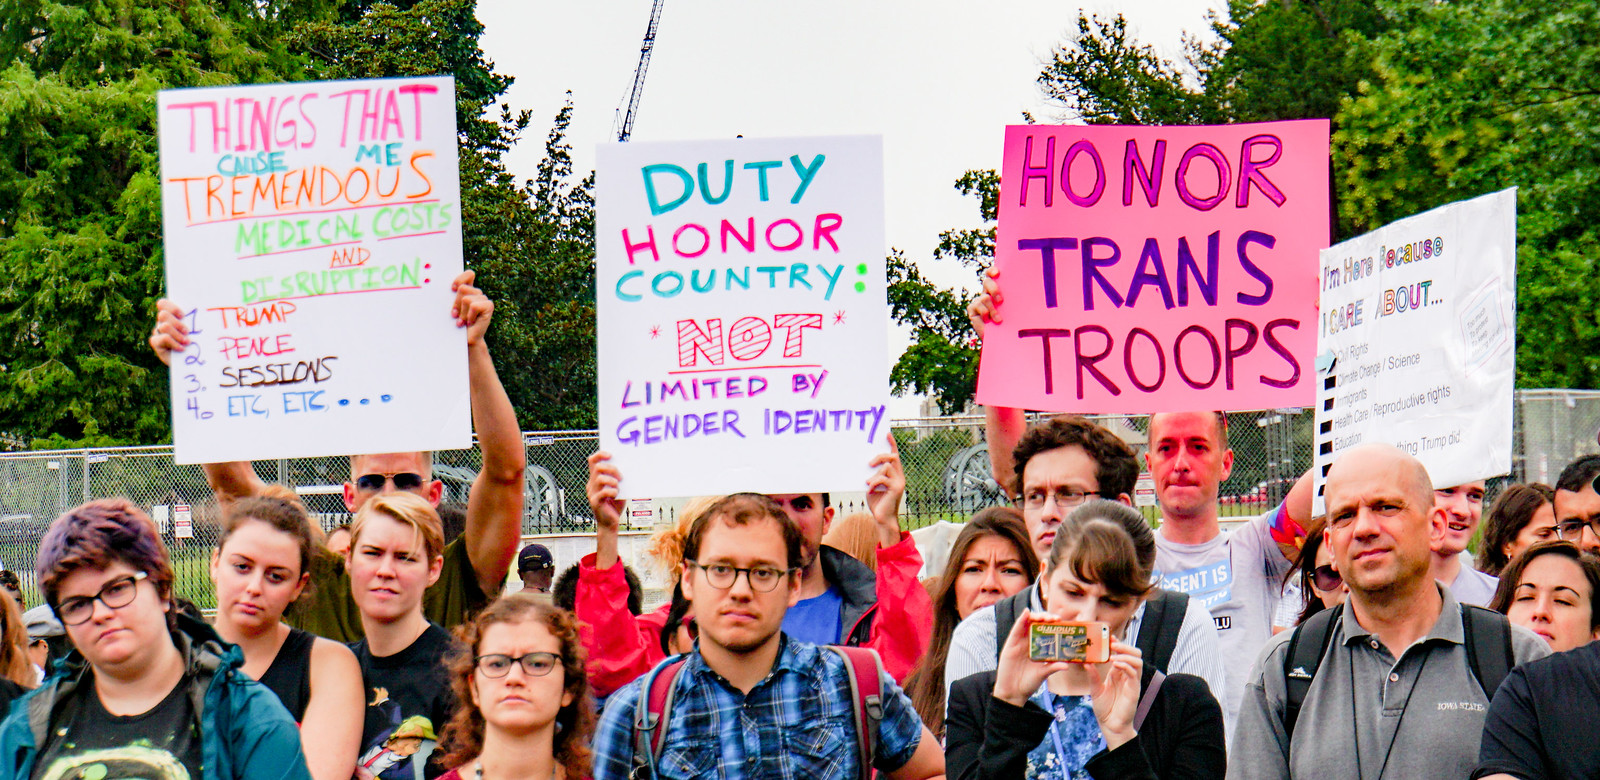 2017.07.29 Stop Transgender Military Ban, Washington, DC USA 7731